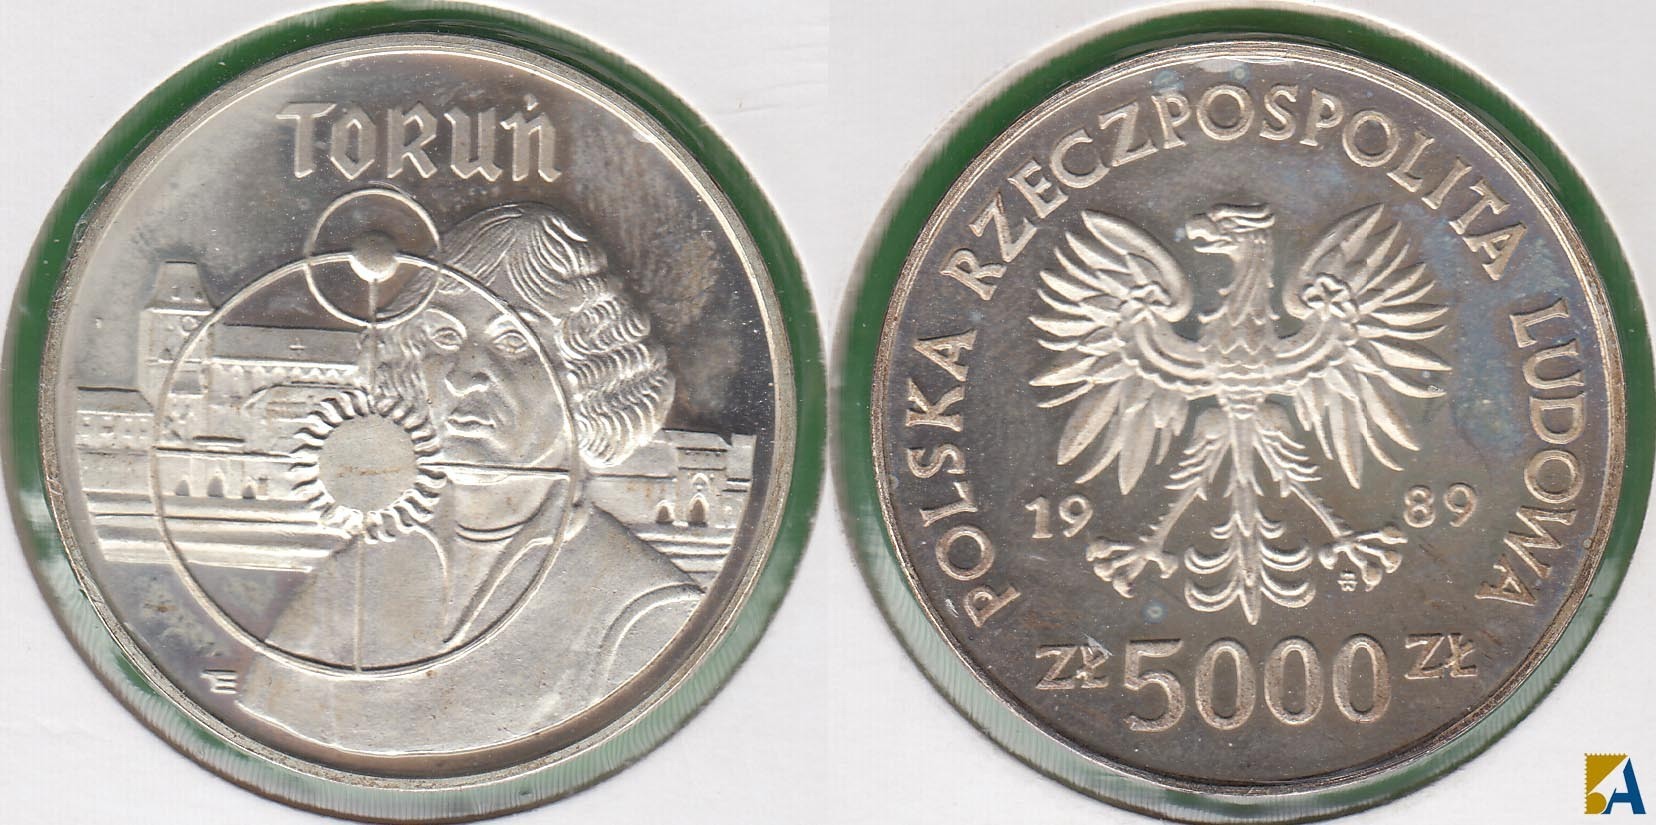 POLONIA - POLSKA. 5000 ZLOTYCH DE 1989. PLATA 0.750.